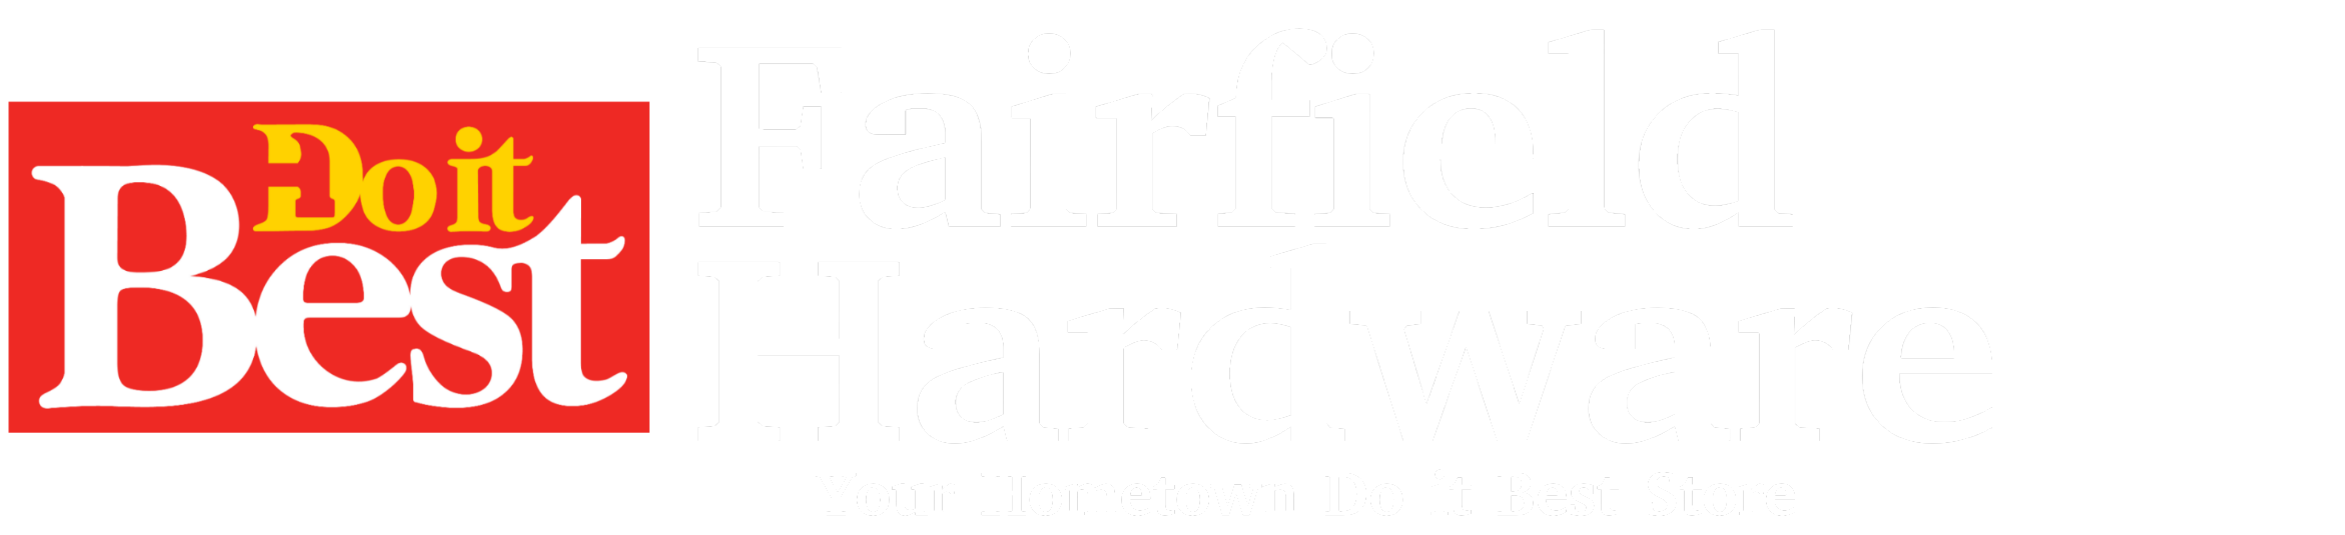 Fairfield Hardware